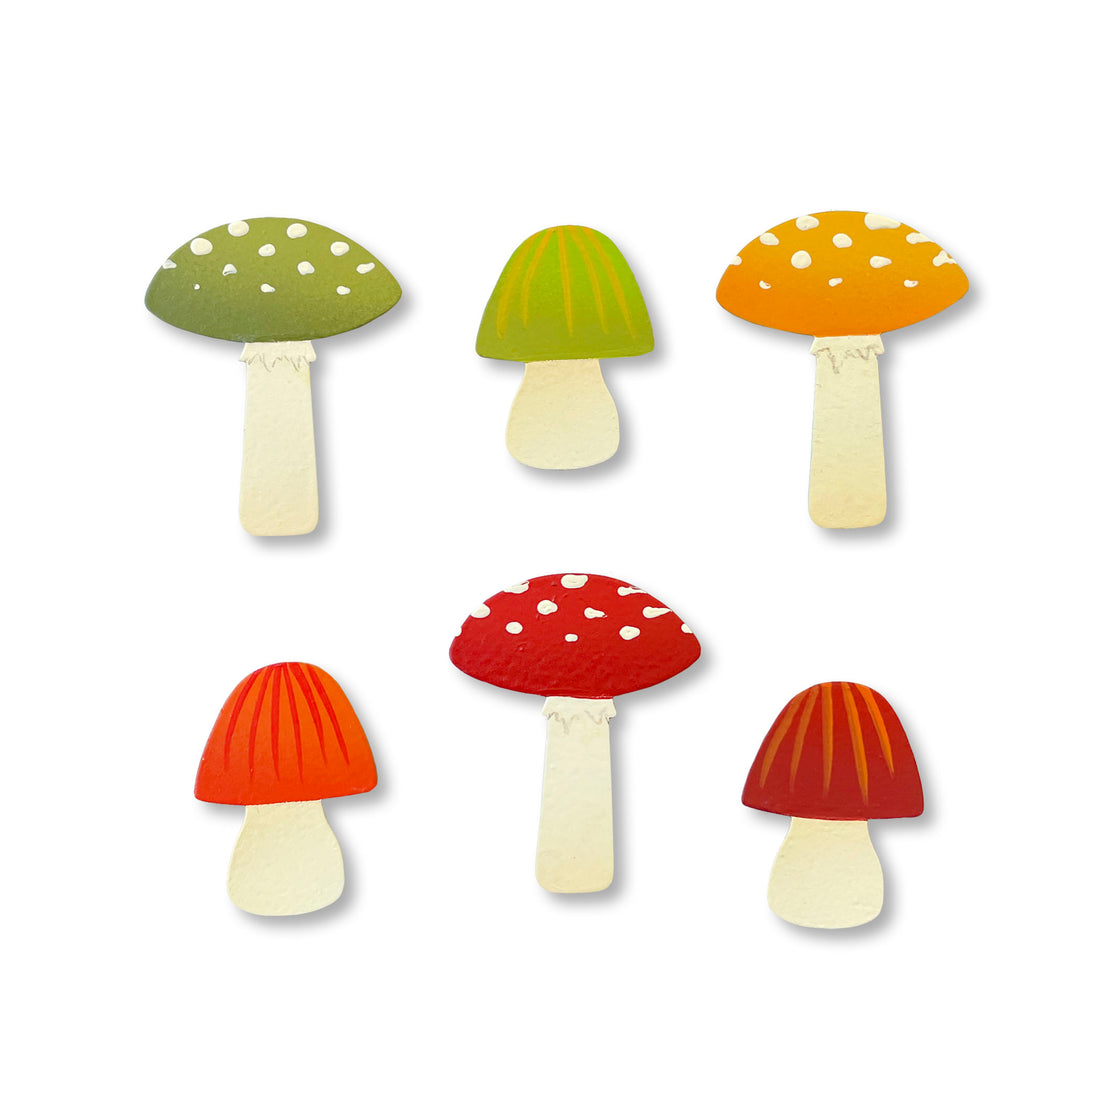 Mushroom Magnets S/6